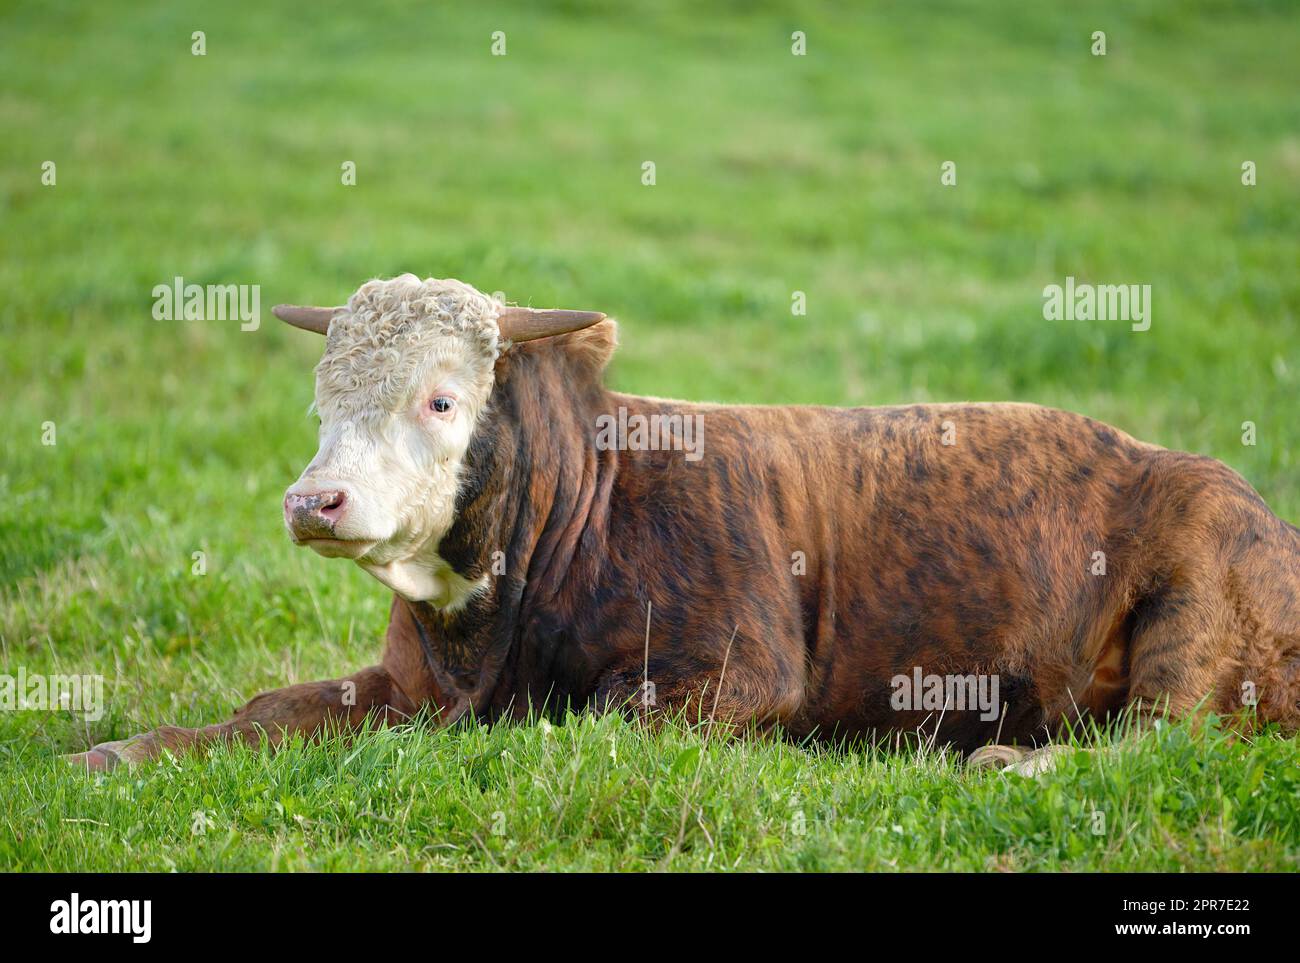 Paesaggio con animali nella natura. Una mucca marrone e bianca seduto su un campo verde in una campagna rurale con spazio fotocopie. Allevamento e allevamento di bovini in un'azienda agricola destinata all'industria della carne bovina e lattiero-casearia Foto Stock